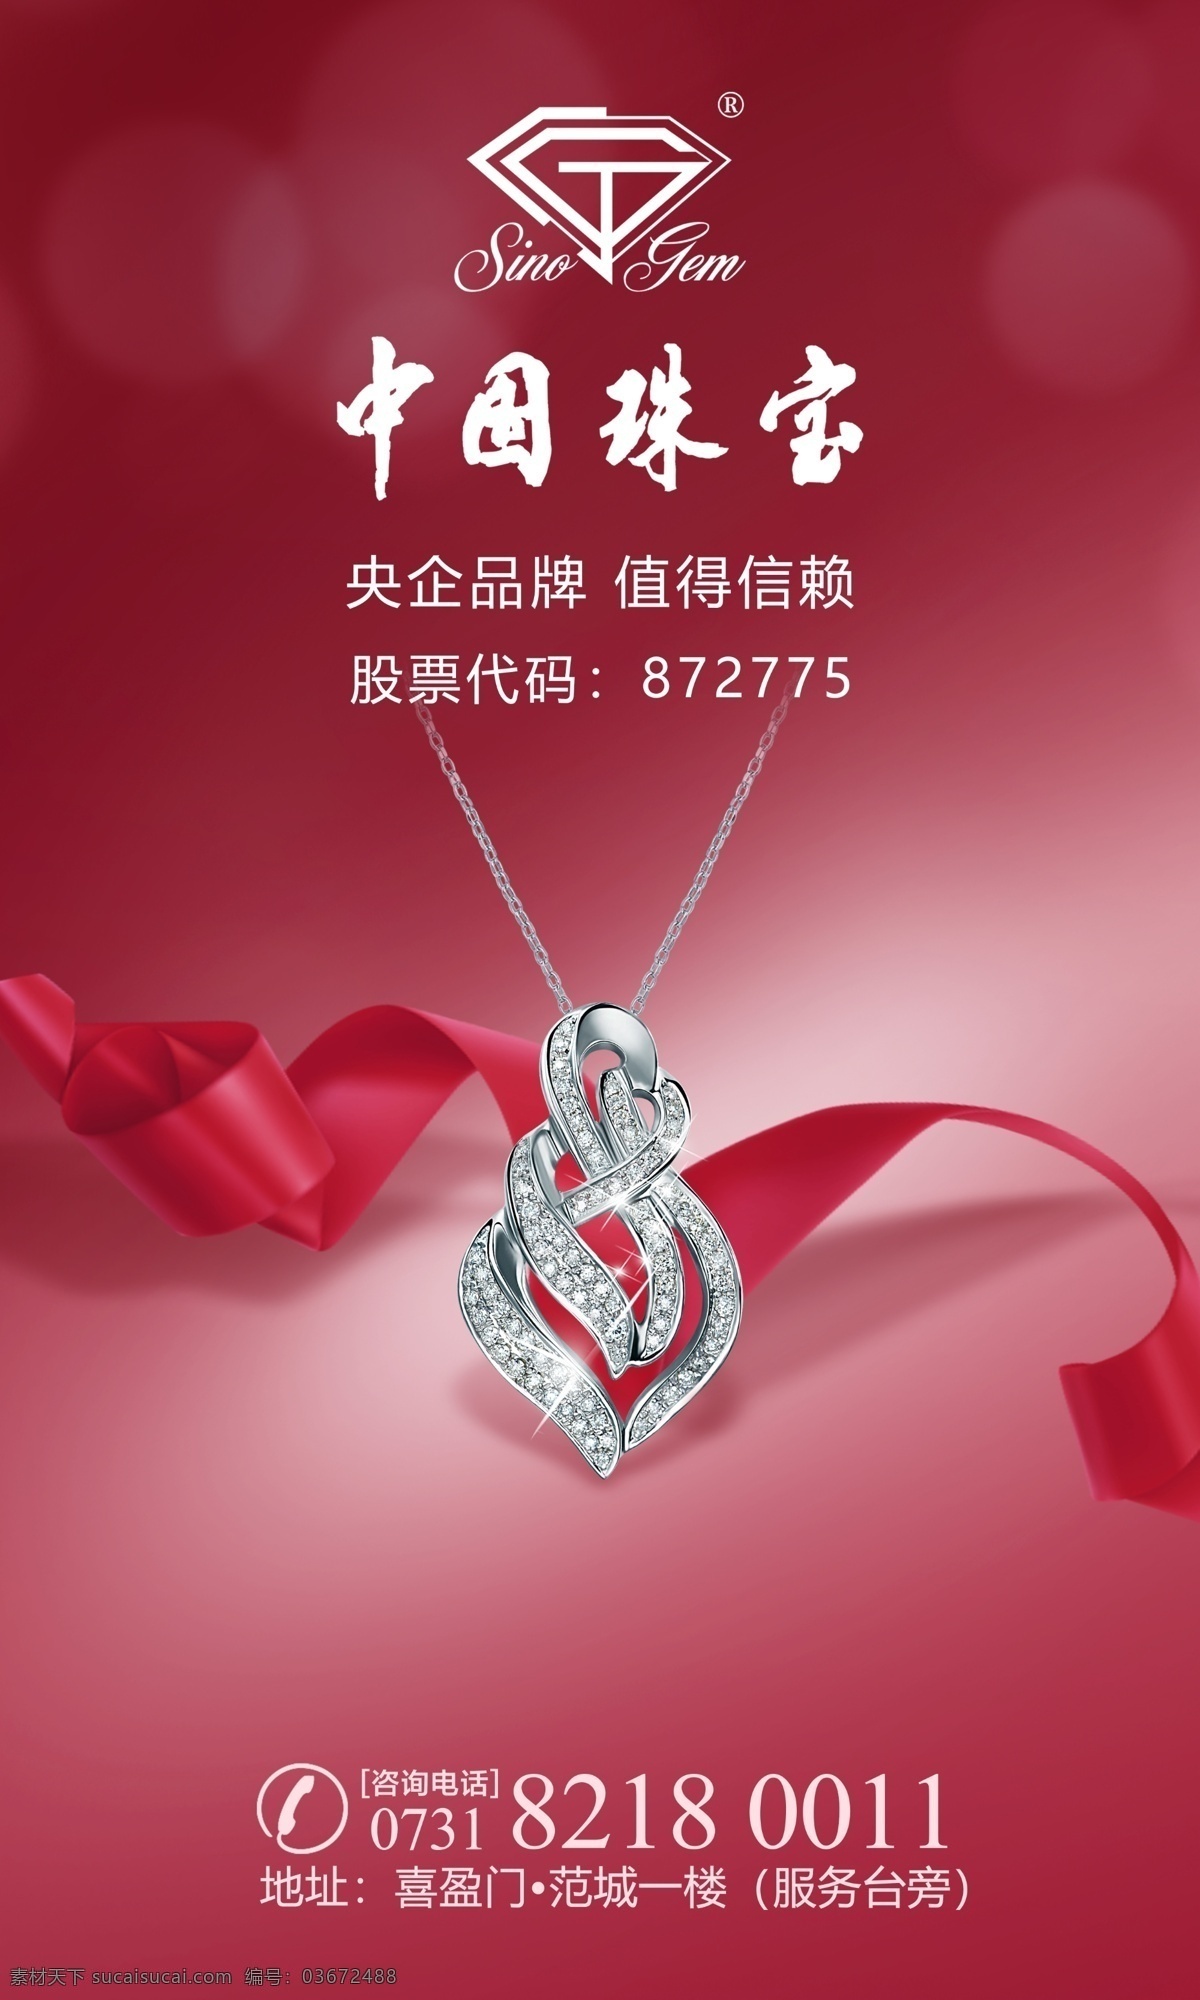 钻石吊坠 中国珠宝形象 钻石项链 吊坠 高档 红色背景